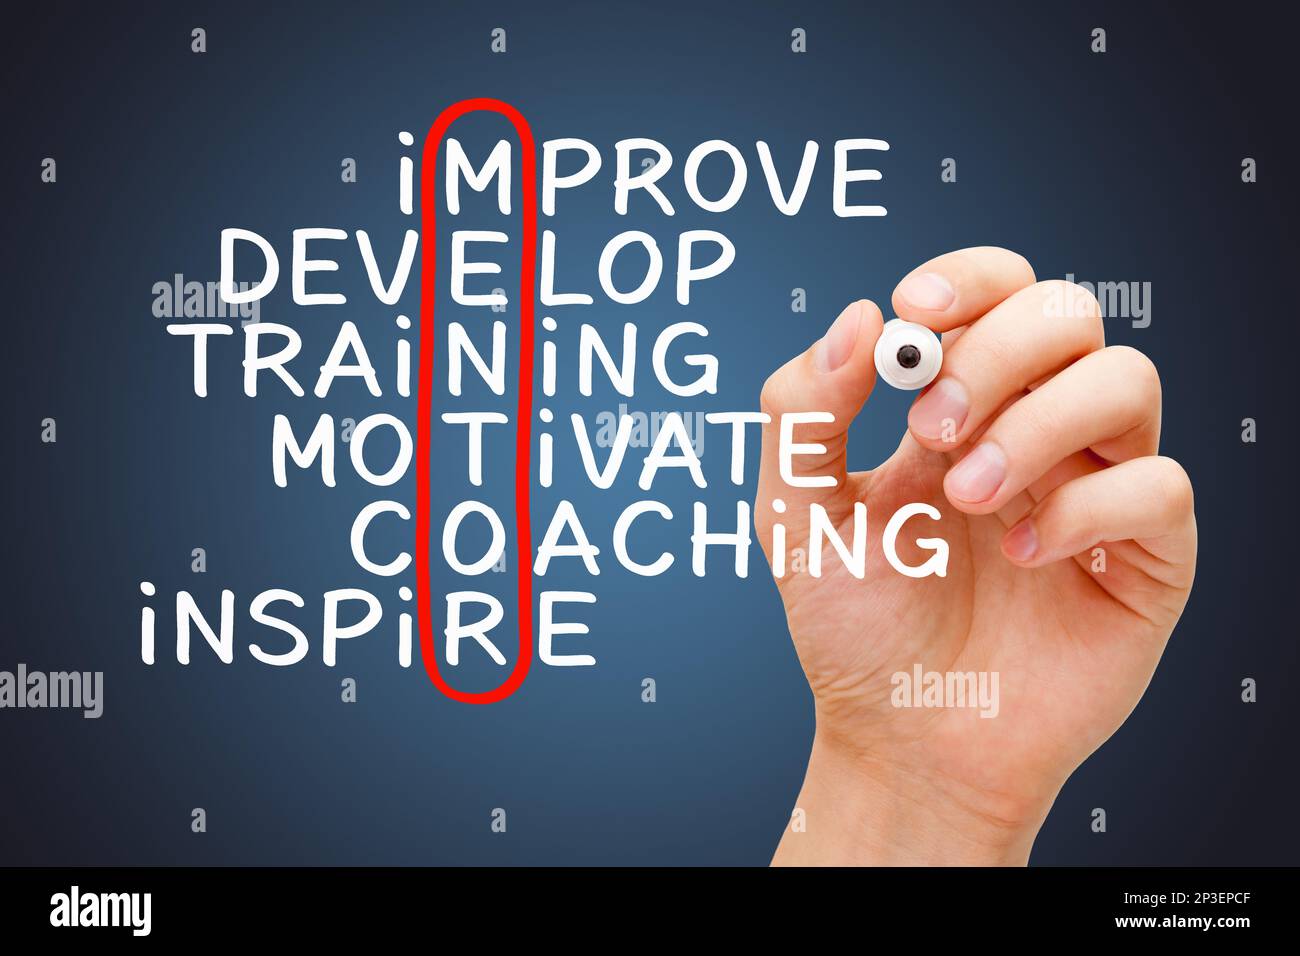 Handschriftlich Mentoring Kreuzworträtsel mit den entsprechenden Wörtern verbessern, entwickeln, Schulen, motivieren, coachen, Und inspirieren. Karriereentwicklungskonzept. Stockfoto